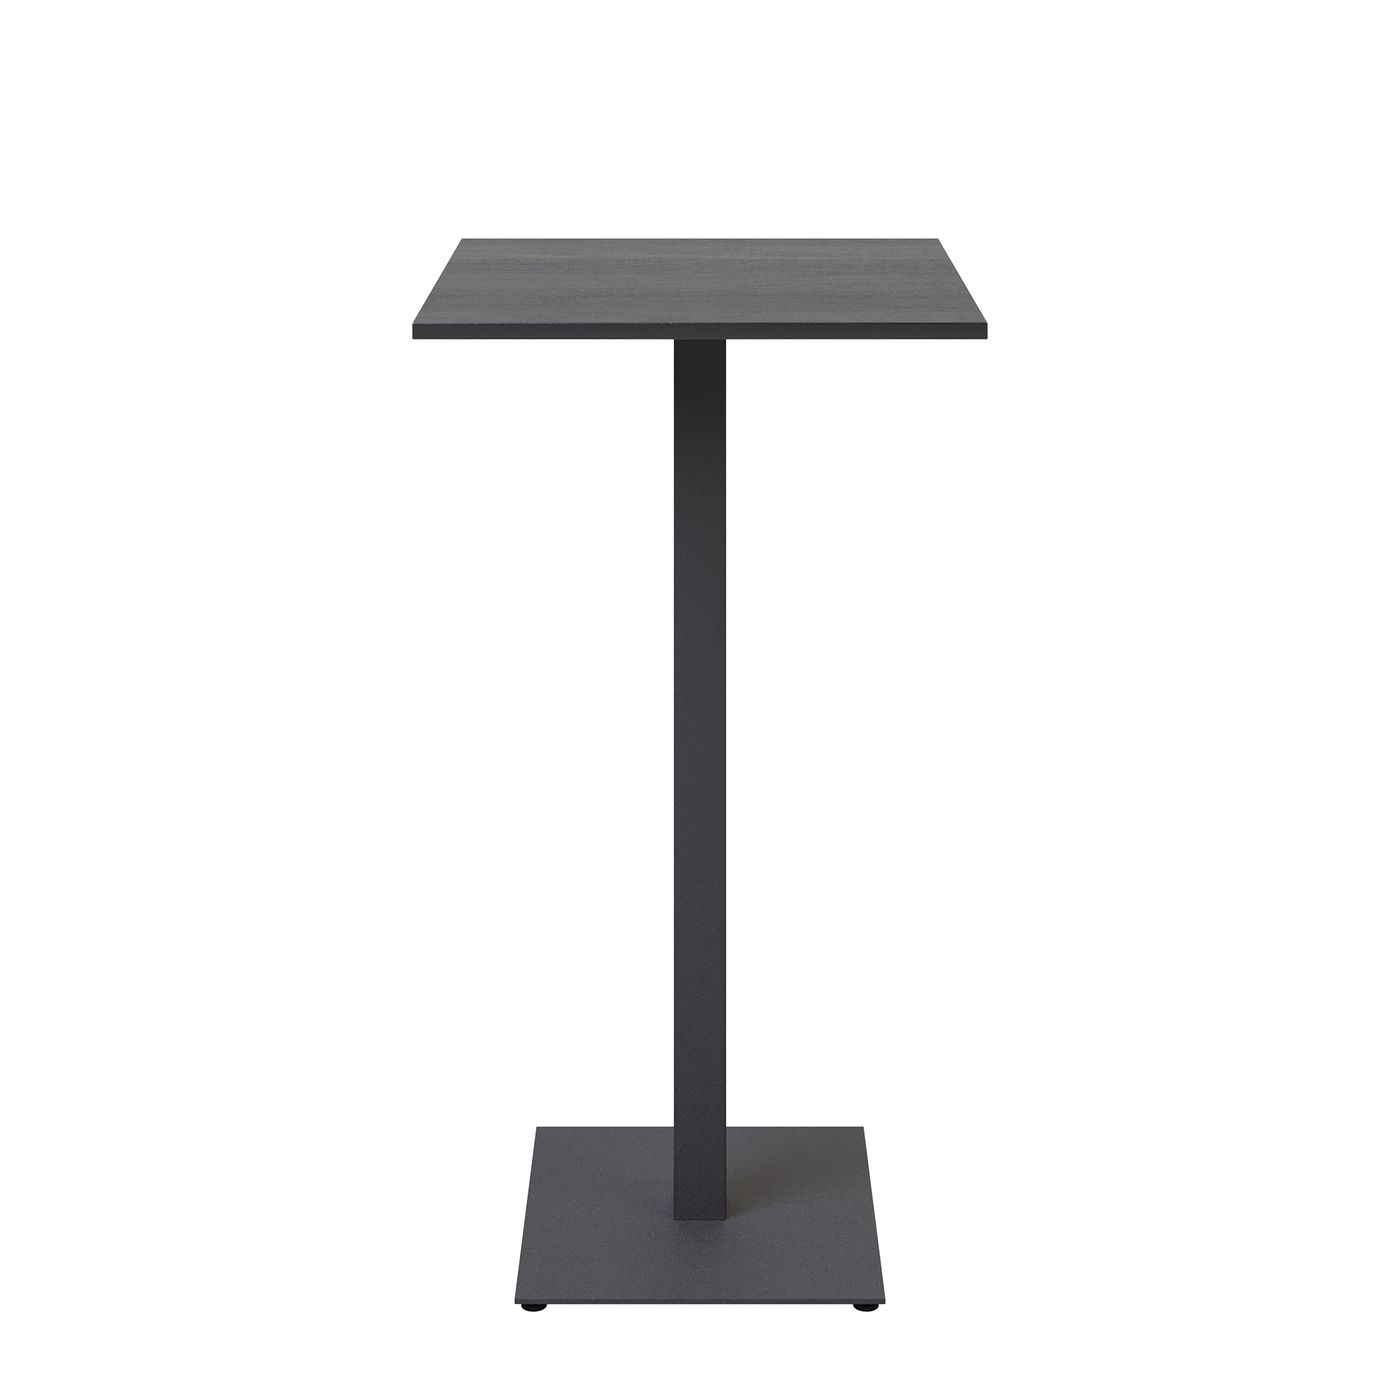 Стол Tetra light bar 60 х 60 чёрный металл / чёрный ДСП (текстура)